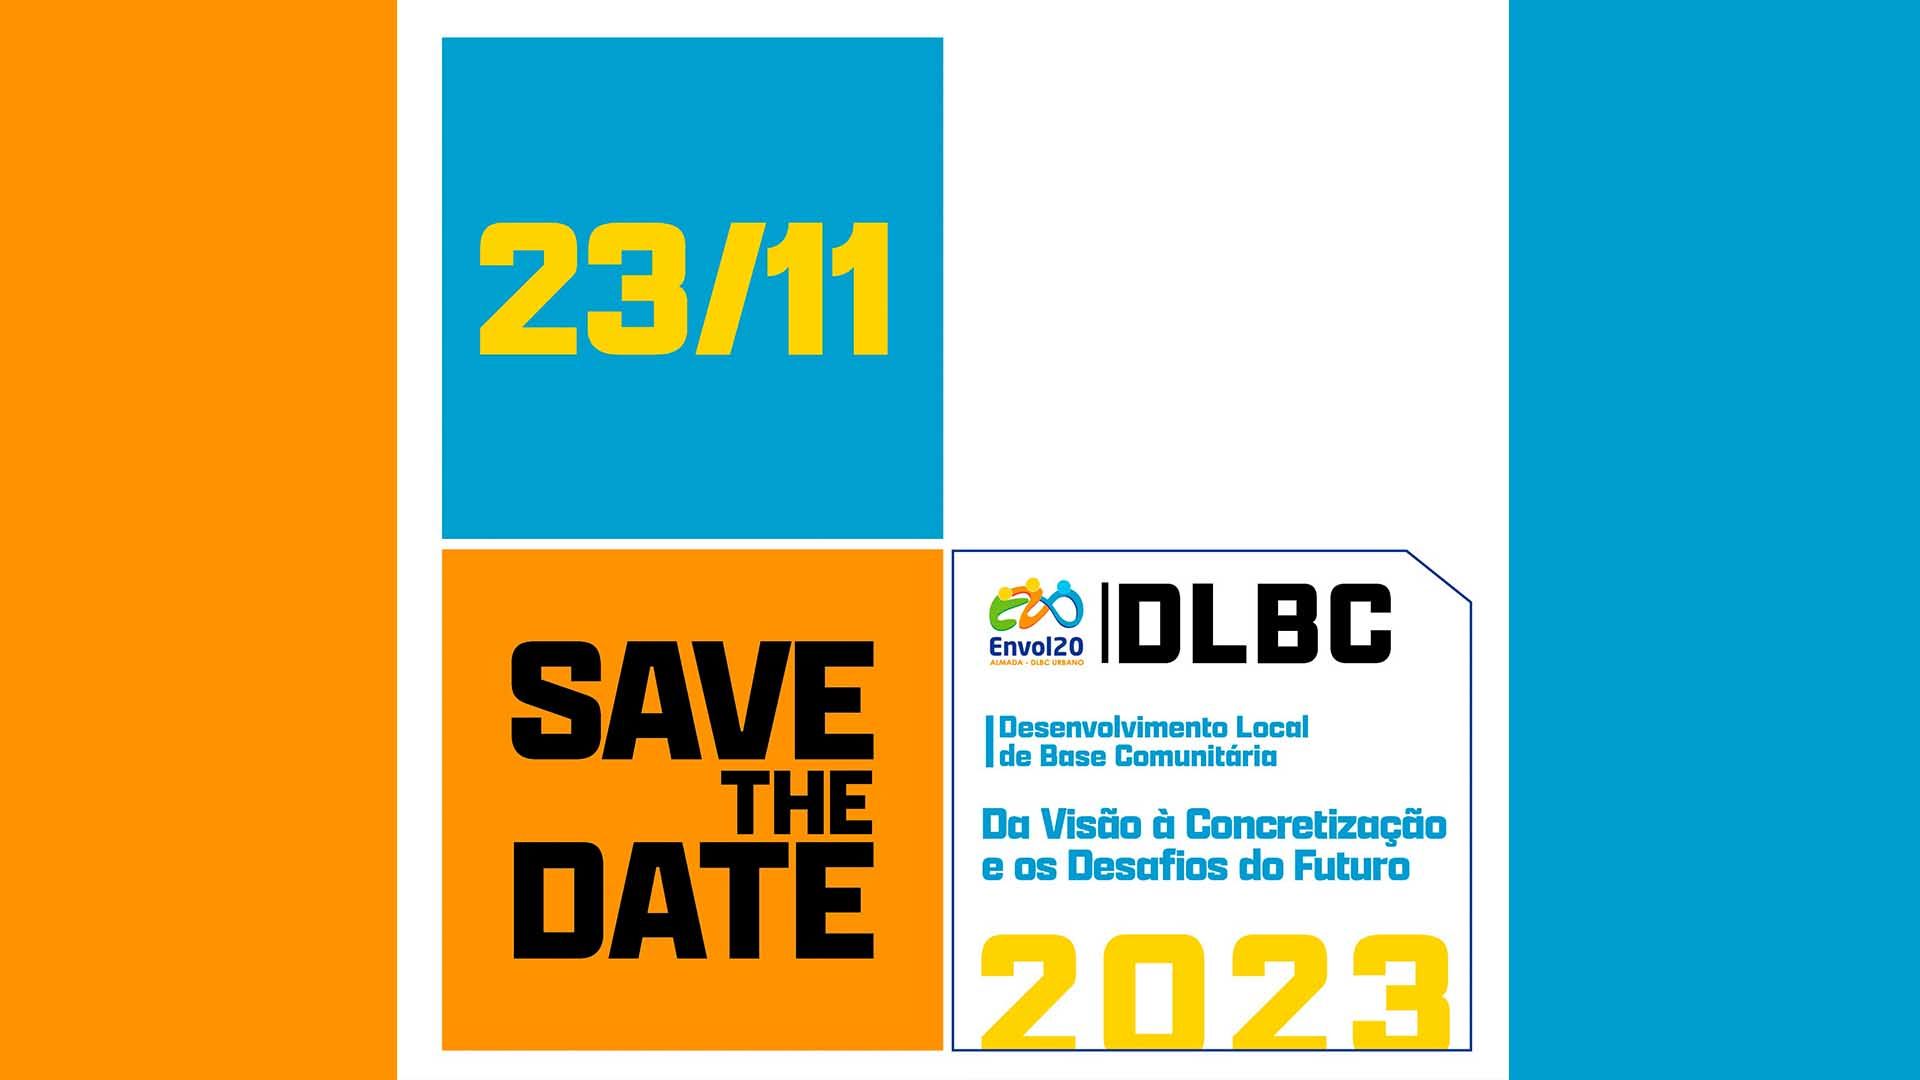 Save The Date: Projeto Envol20 Almada DLBC Urbano || Evento Encerramento DLBC